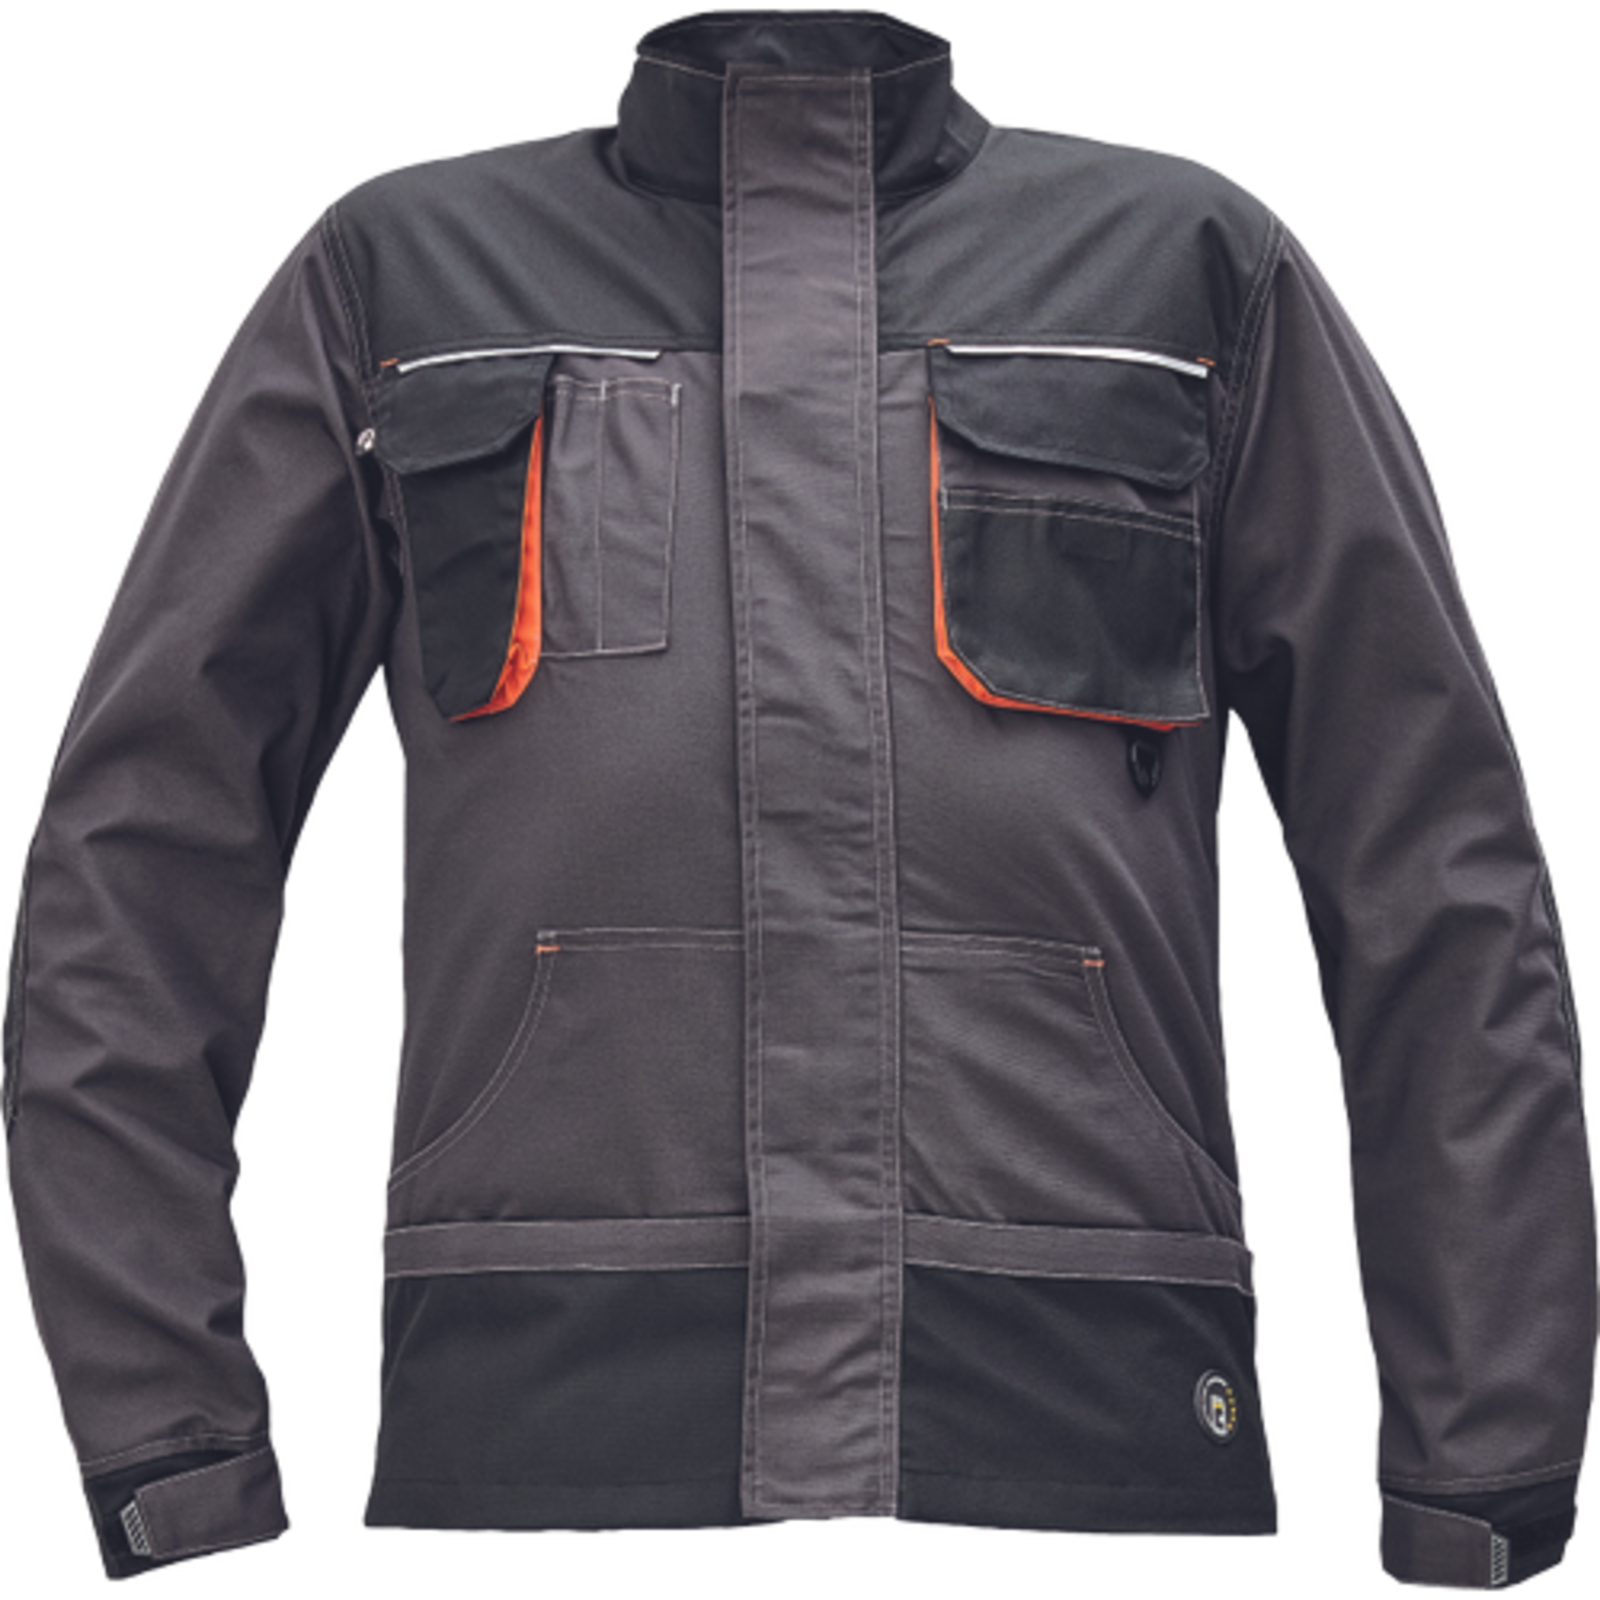 Odolná montérková bunda Emerton Plus - veľkosť: 52, farba: antracit/oranžová